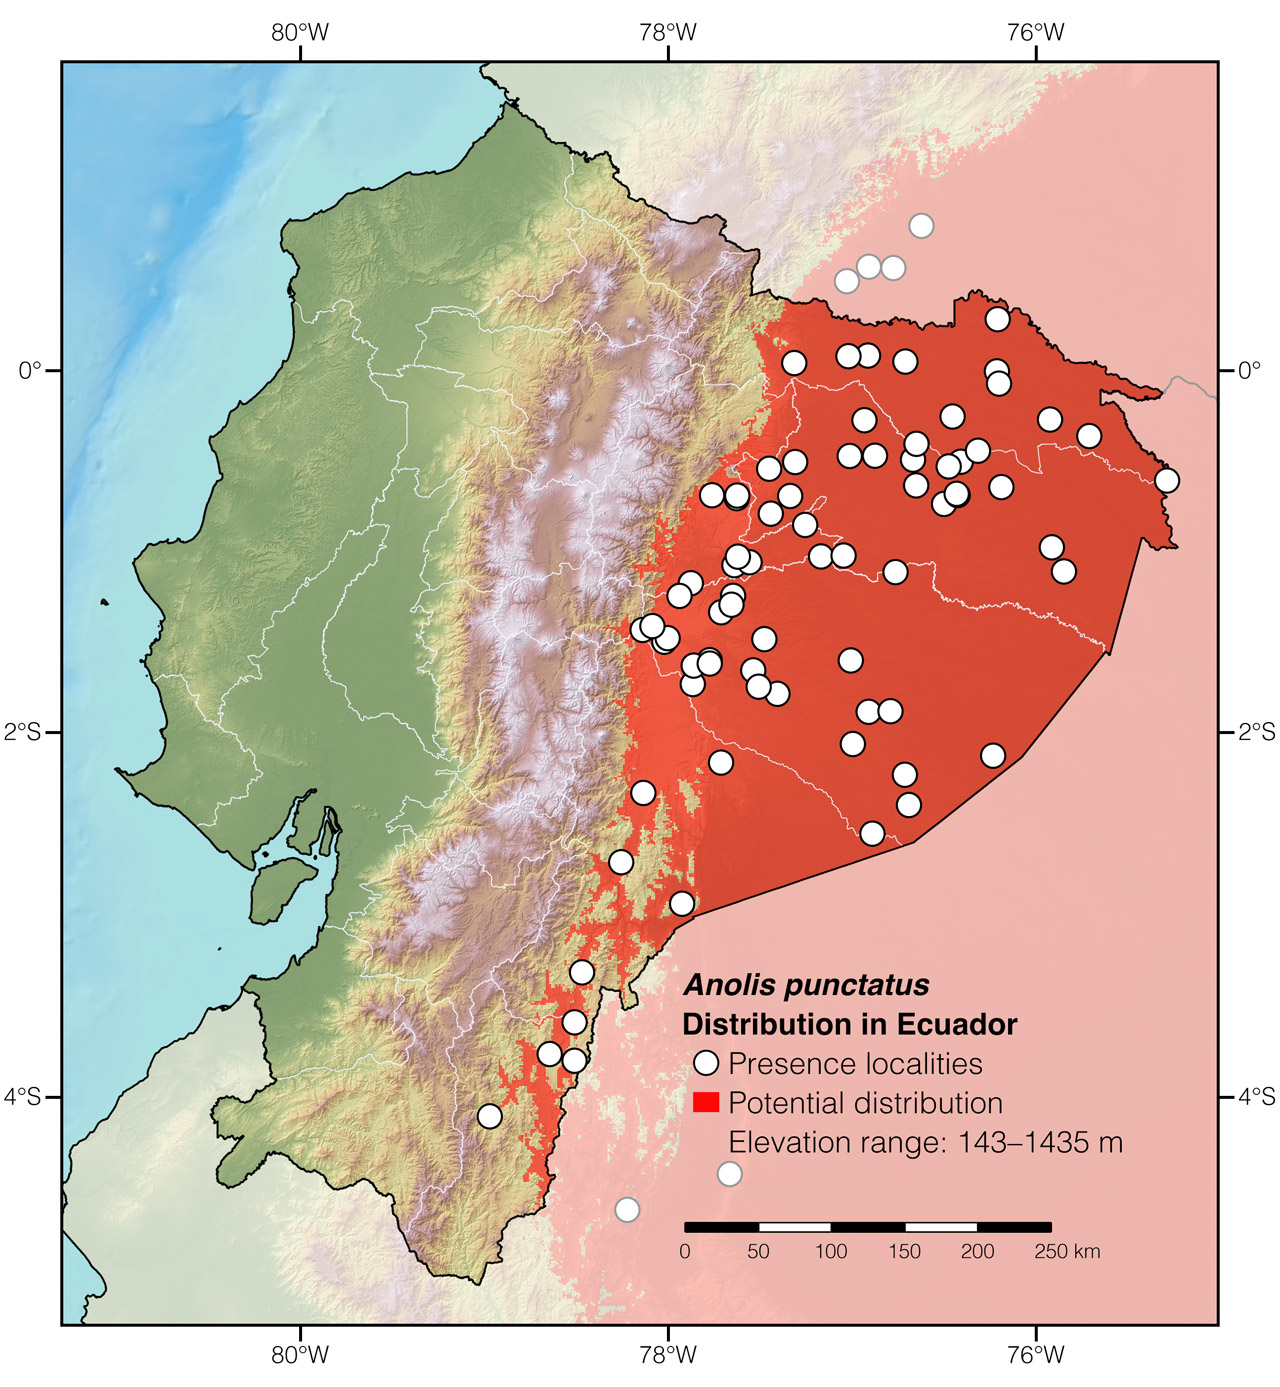 Distribution of Anolis punctatus in Ecuador